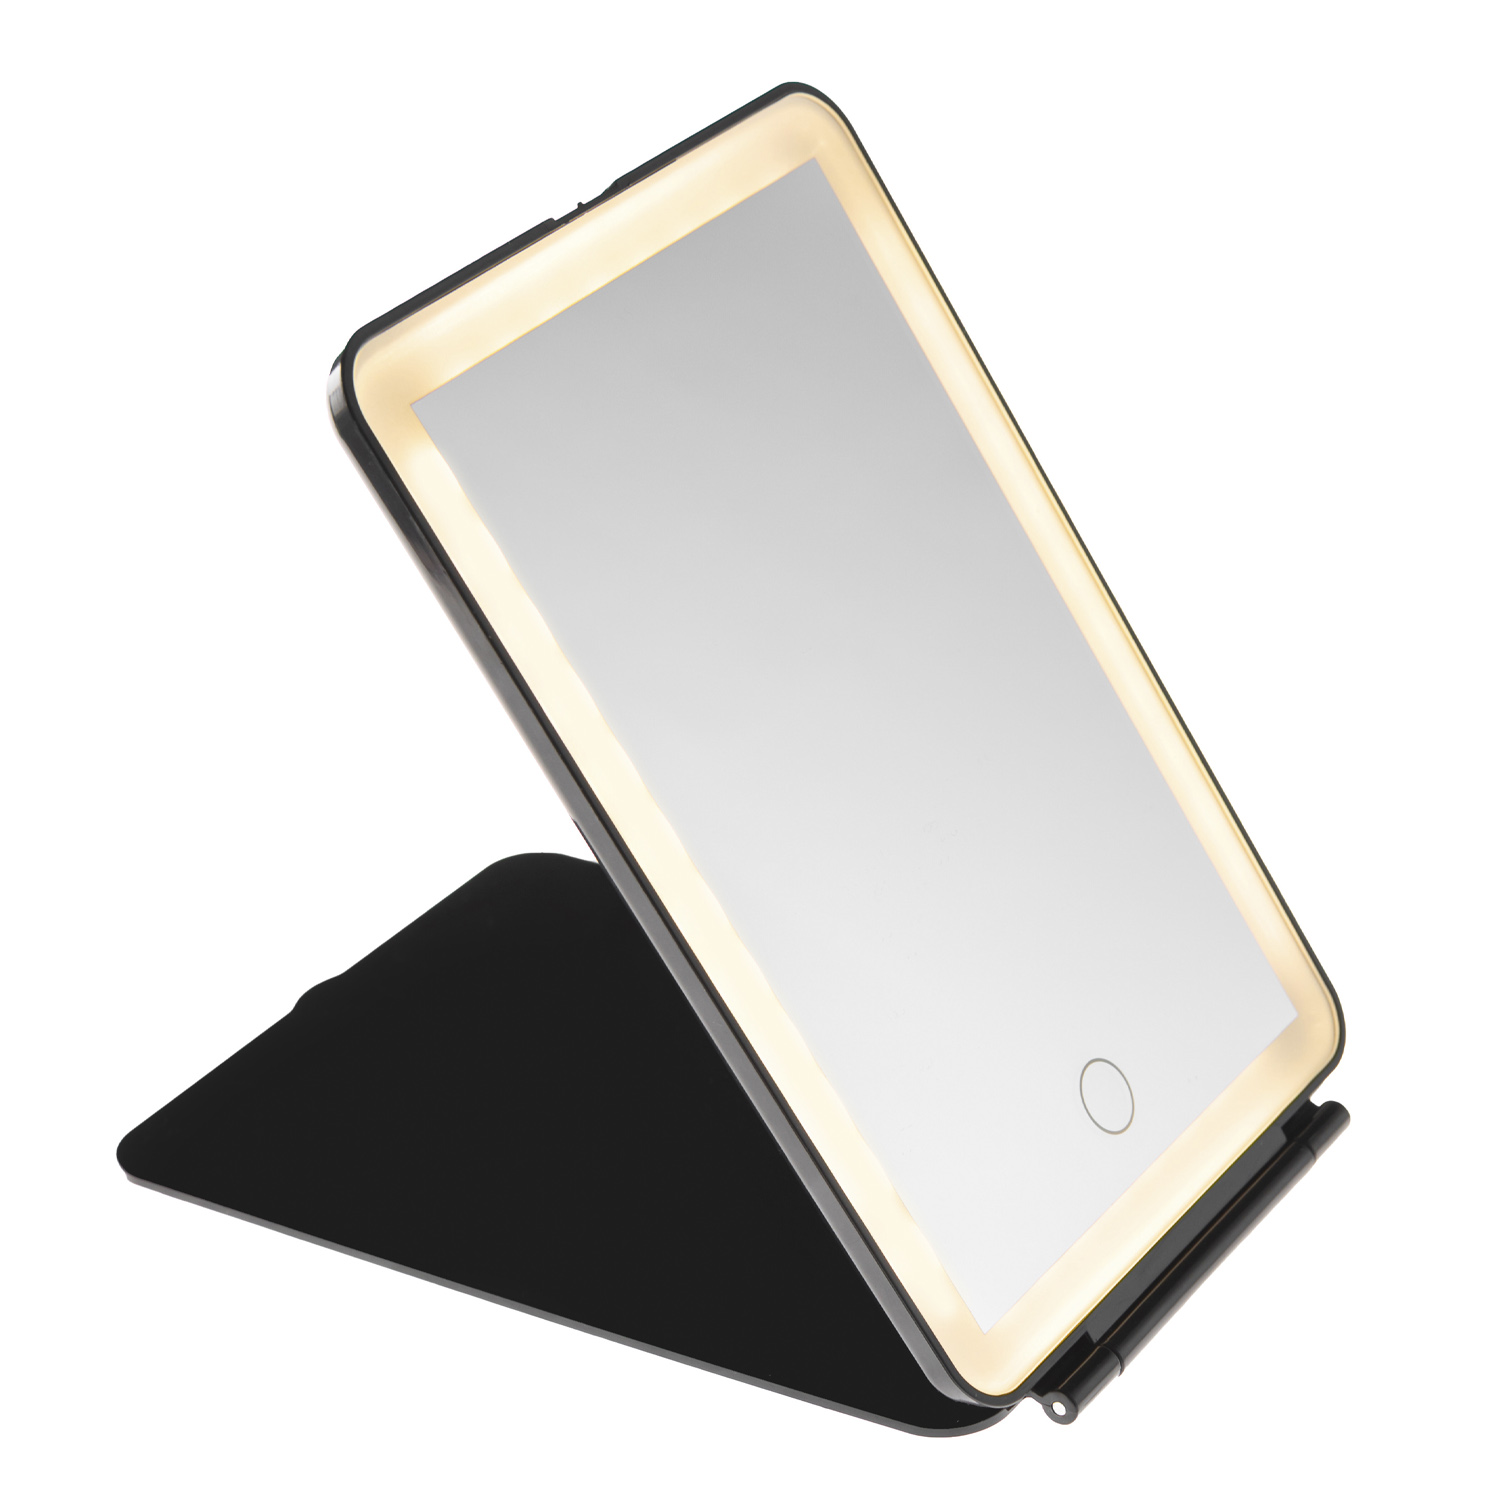 Зеркало косметическое CleverCare в форме планшета с LED подсветкой монохром цвет черный - фото 3